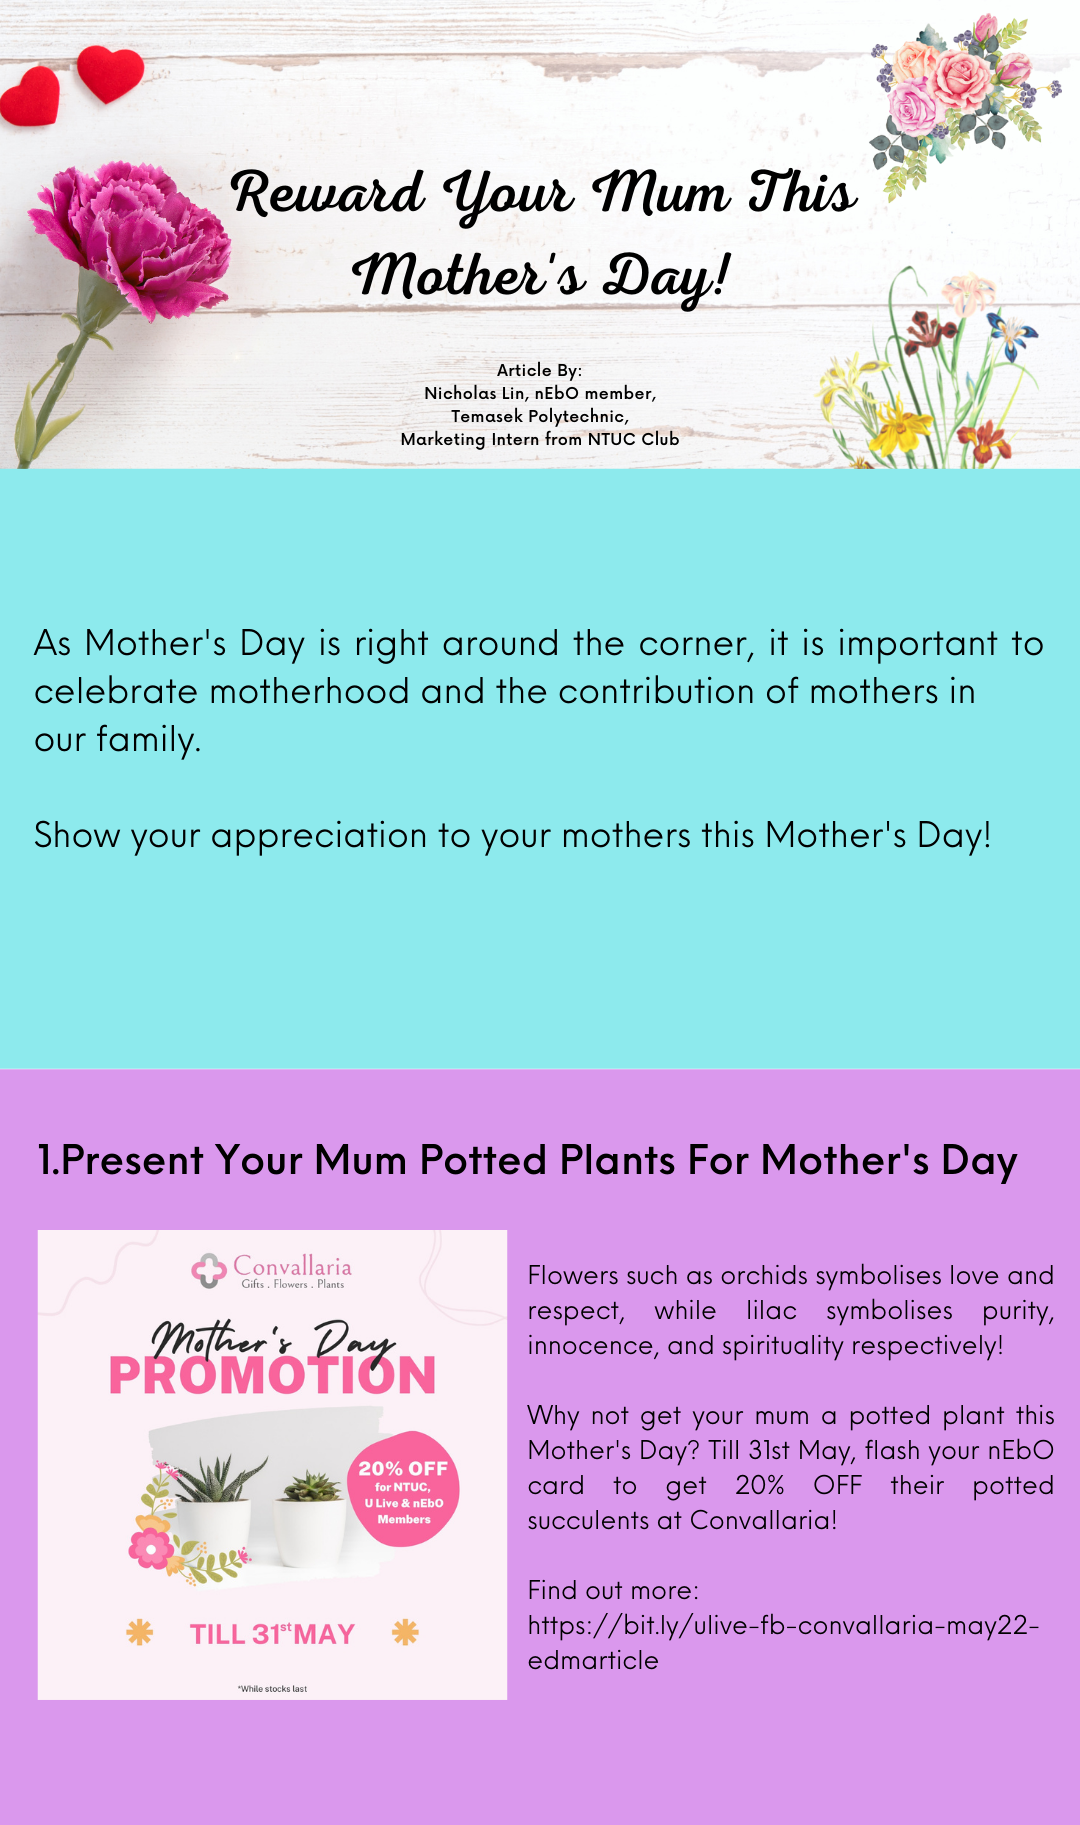 Reward Your Mum This Mother's Day - Convallaria